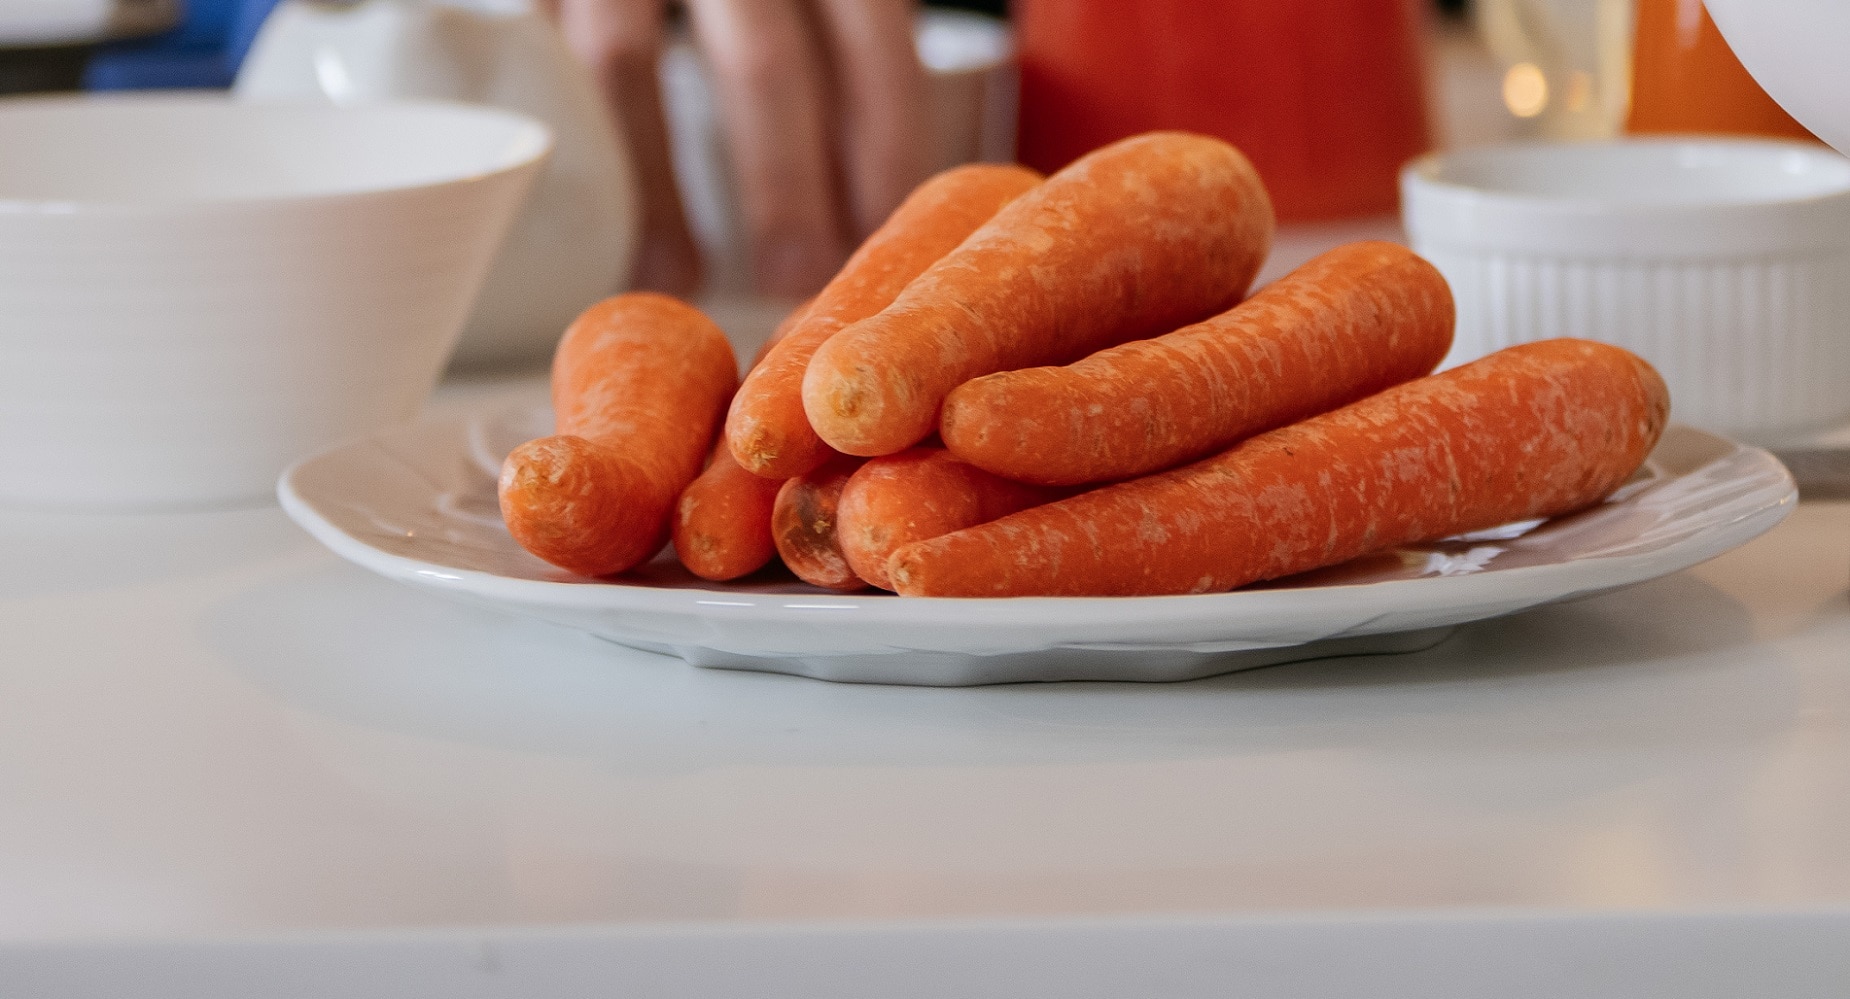 La zanahoria, el producto versátil y sostenible del mes en 'Gastronomía sostenible'